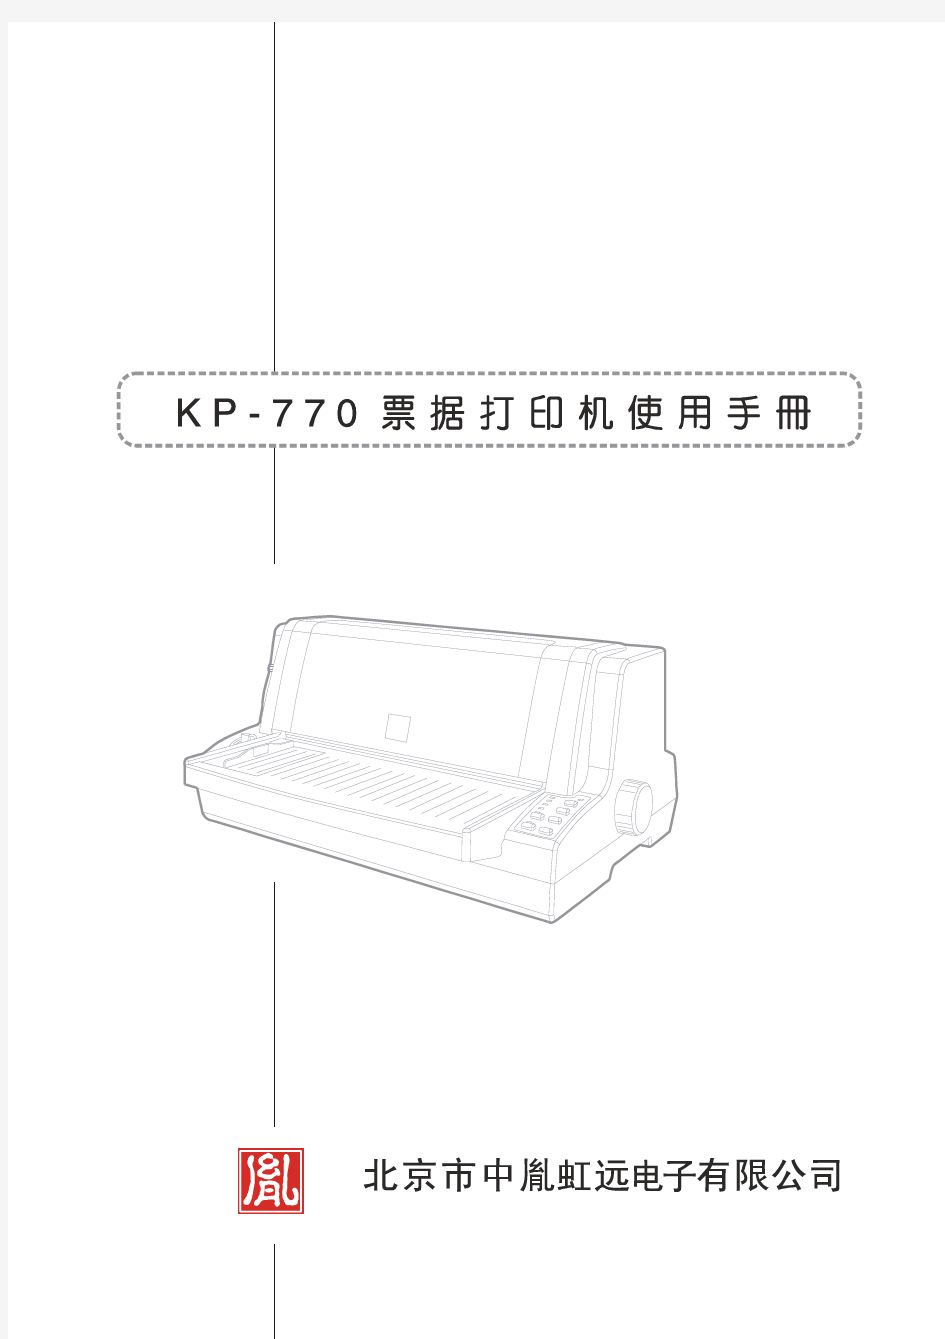 中胤虹远 税控 KP-770票据打印机使用手册